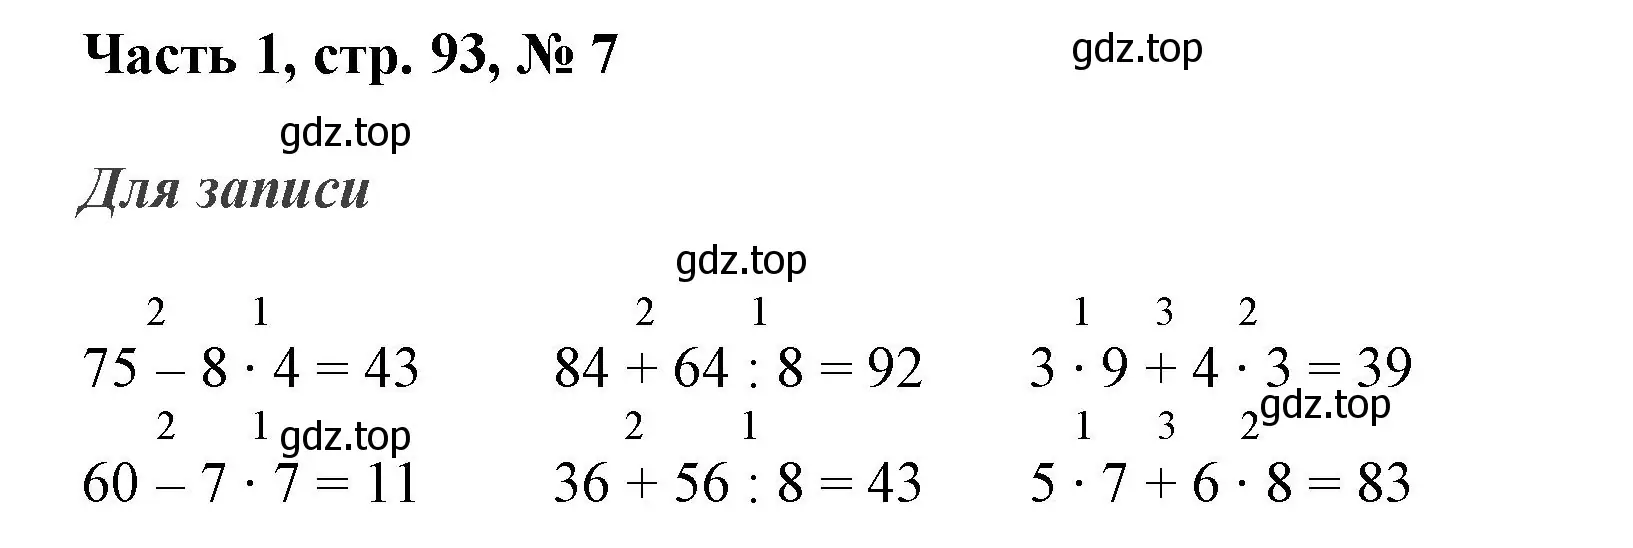 Решение номер 7 (страница 93) гдз по математике 3 класс Моро, Бантова, учебник 1 часть